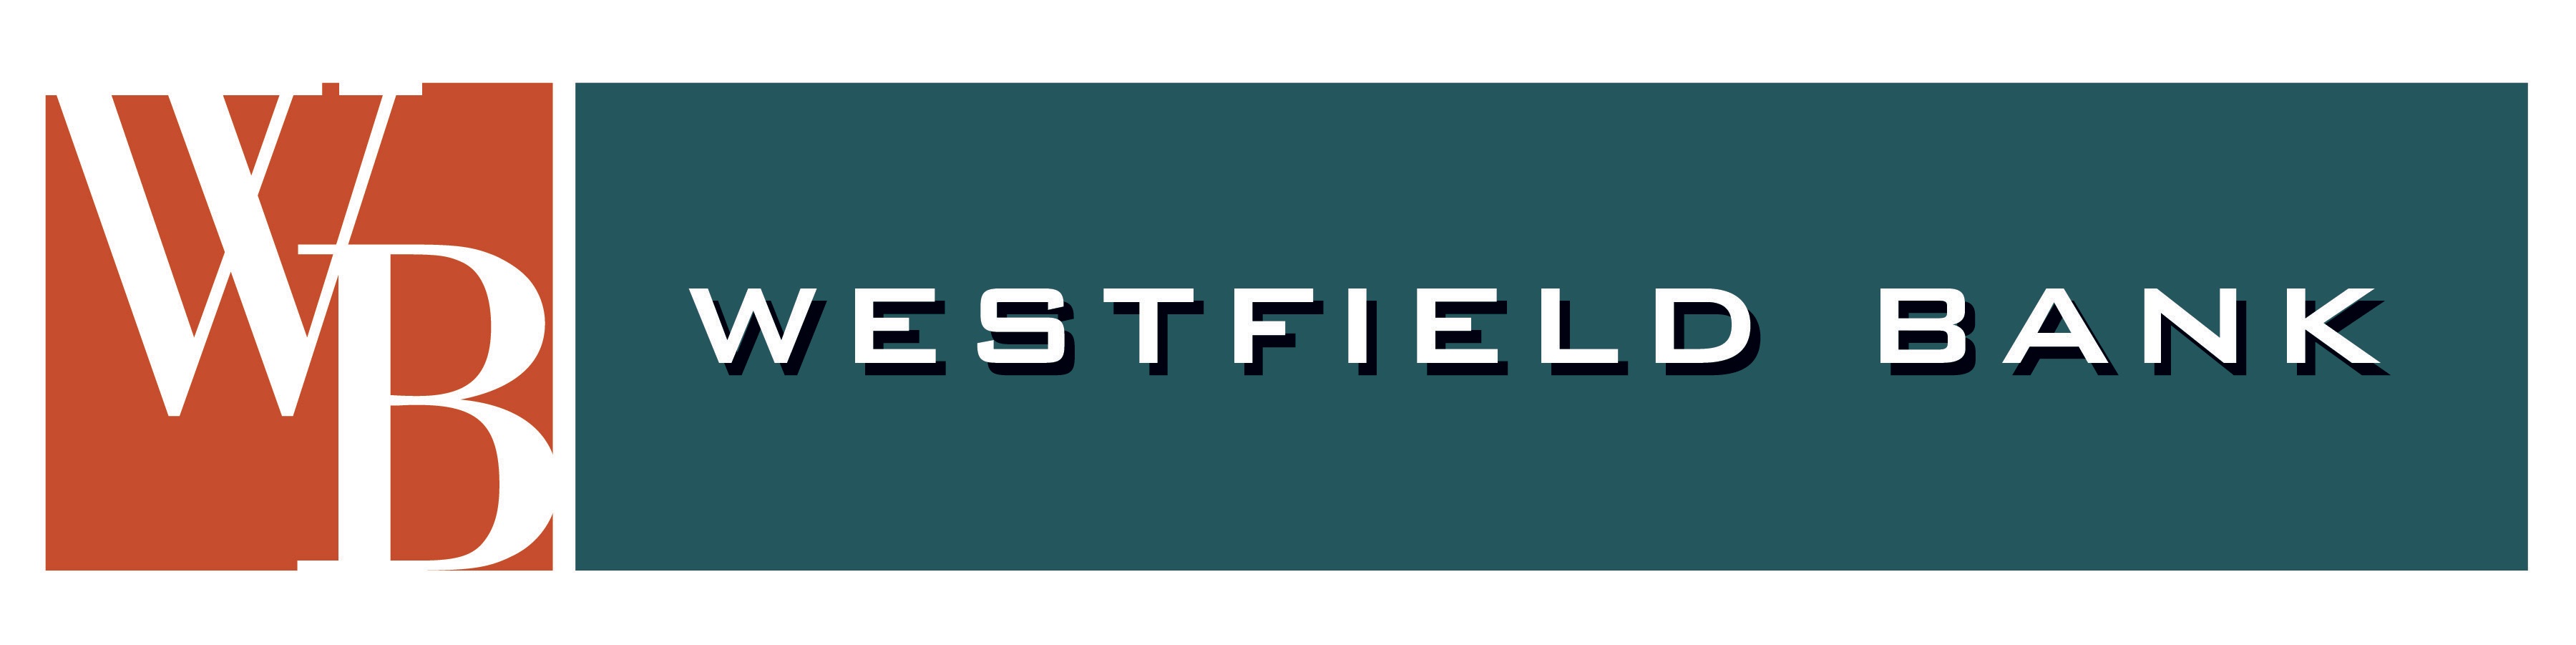 Westfield Bank Logo.jpg